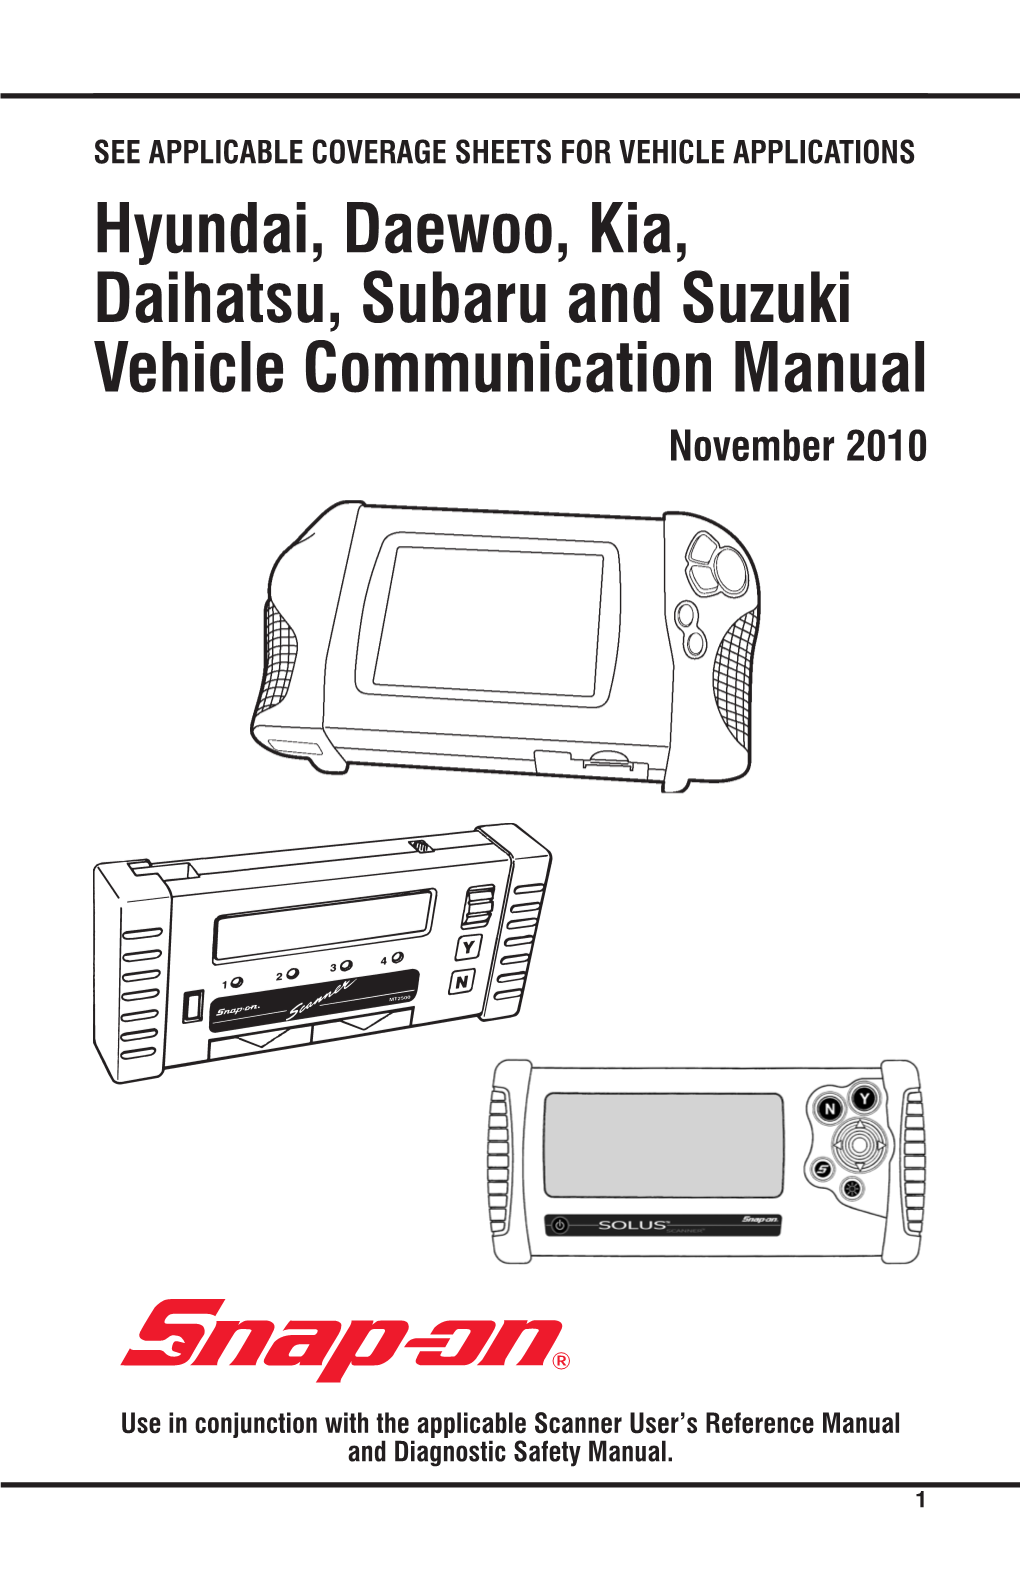 Hyundai, Daewoo, Kia, Daihatsu, Subaru and Suzuki Vehicle Communication Manual November 2010